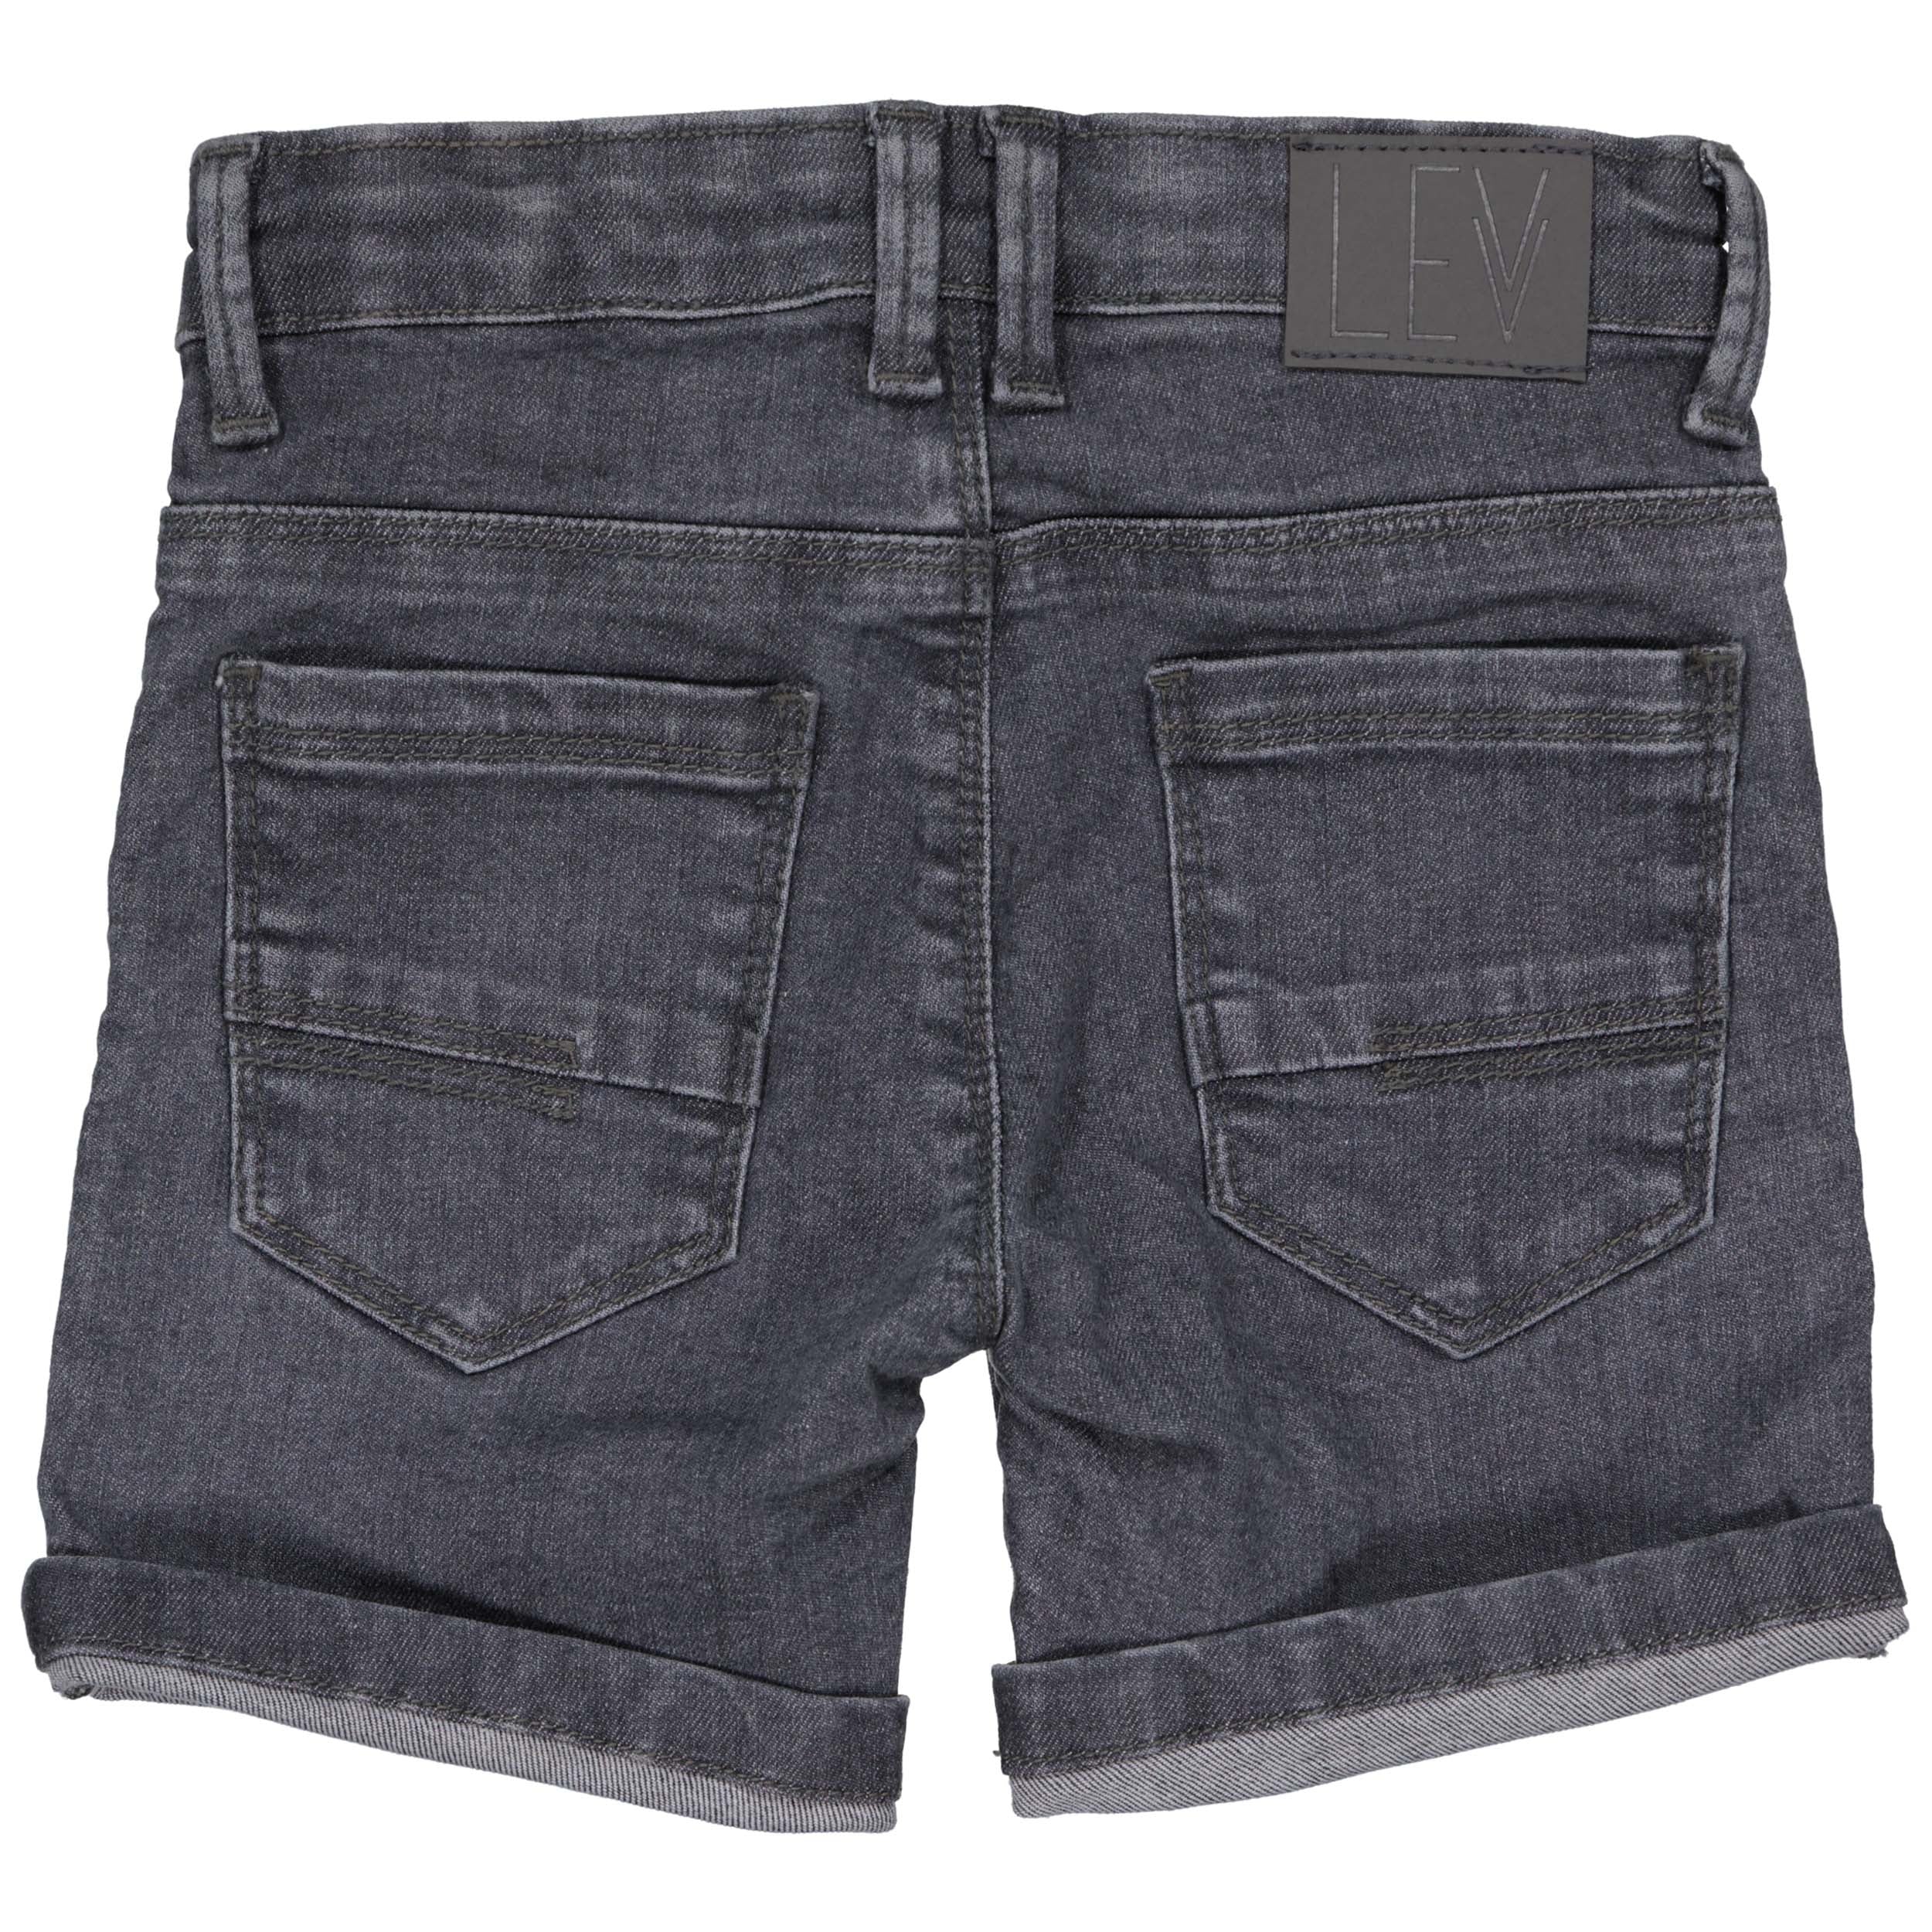 Jongens Jeans short MINOLS243 van Little Levv in de kleur Light Grey Denim in maat 128.